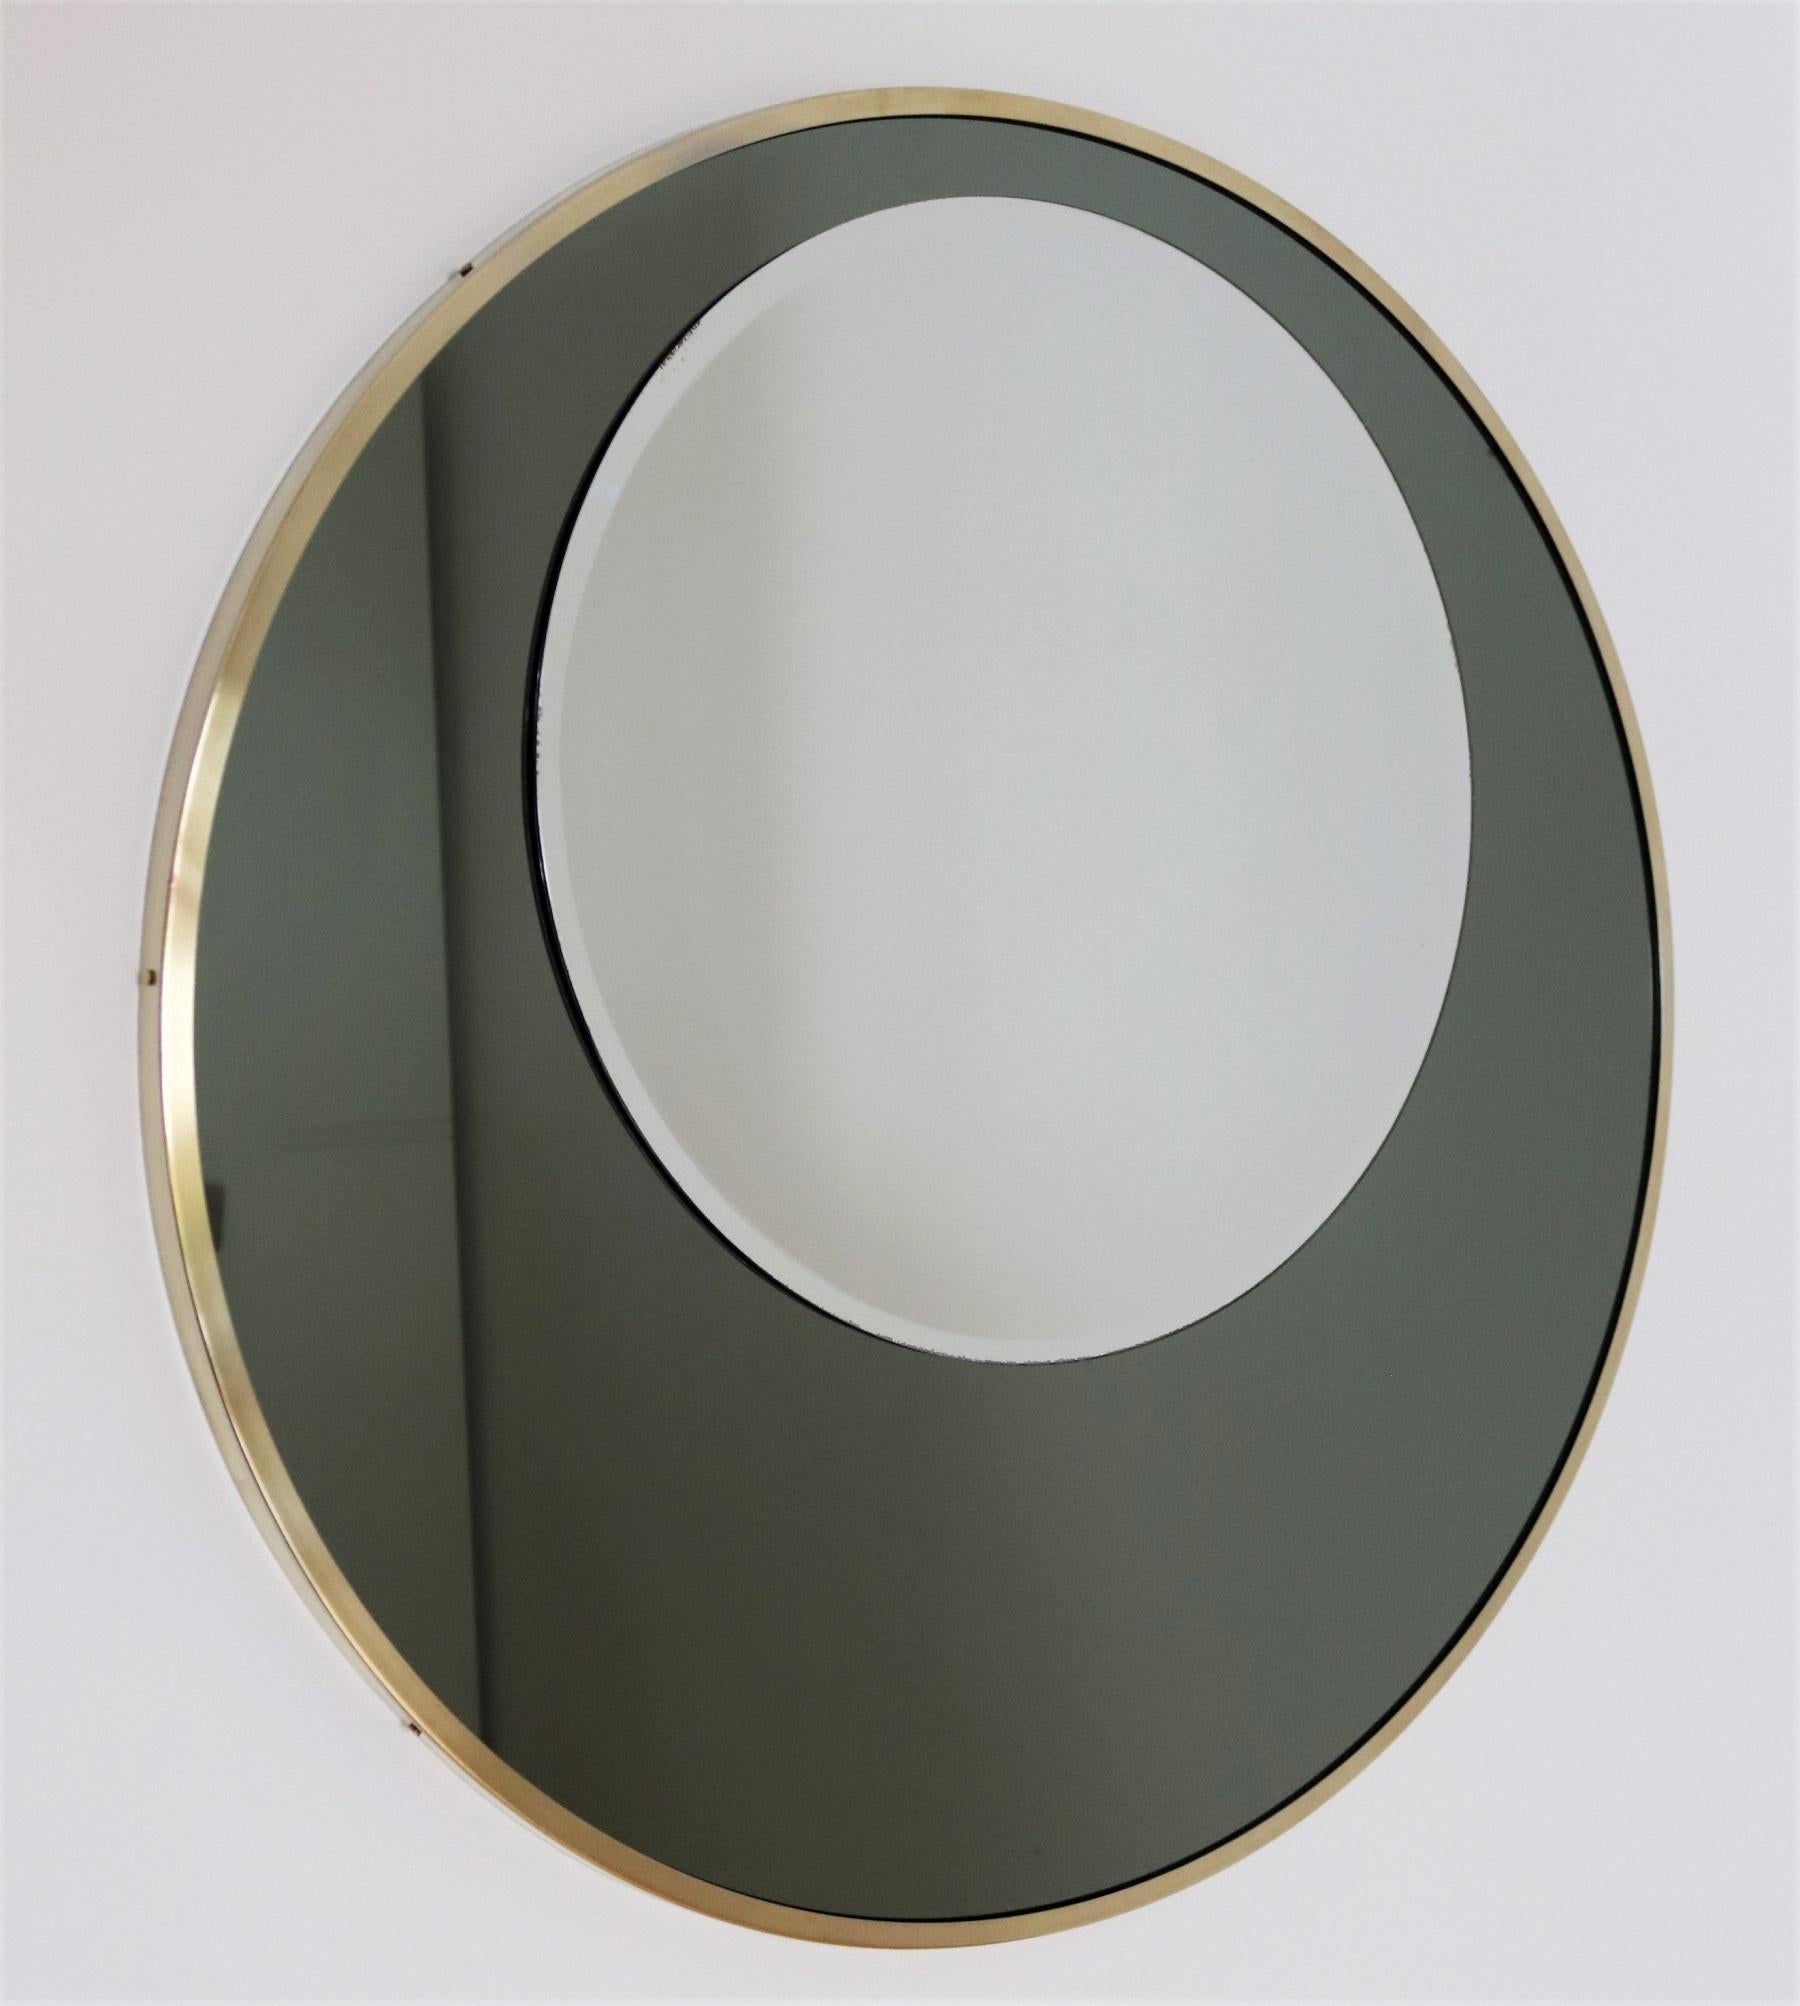 Magnifique miroir mural ou de console avec deux glaces rondes superposées et cadre en laiton.
Le miroir a été fabriqué en Italie dans les années 1970.
Le miroir inférieur, plus grand, est de couleur vert olive, le miroir supérieur, plus petit, est